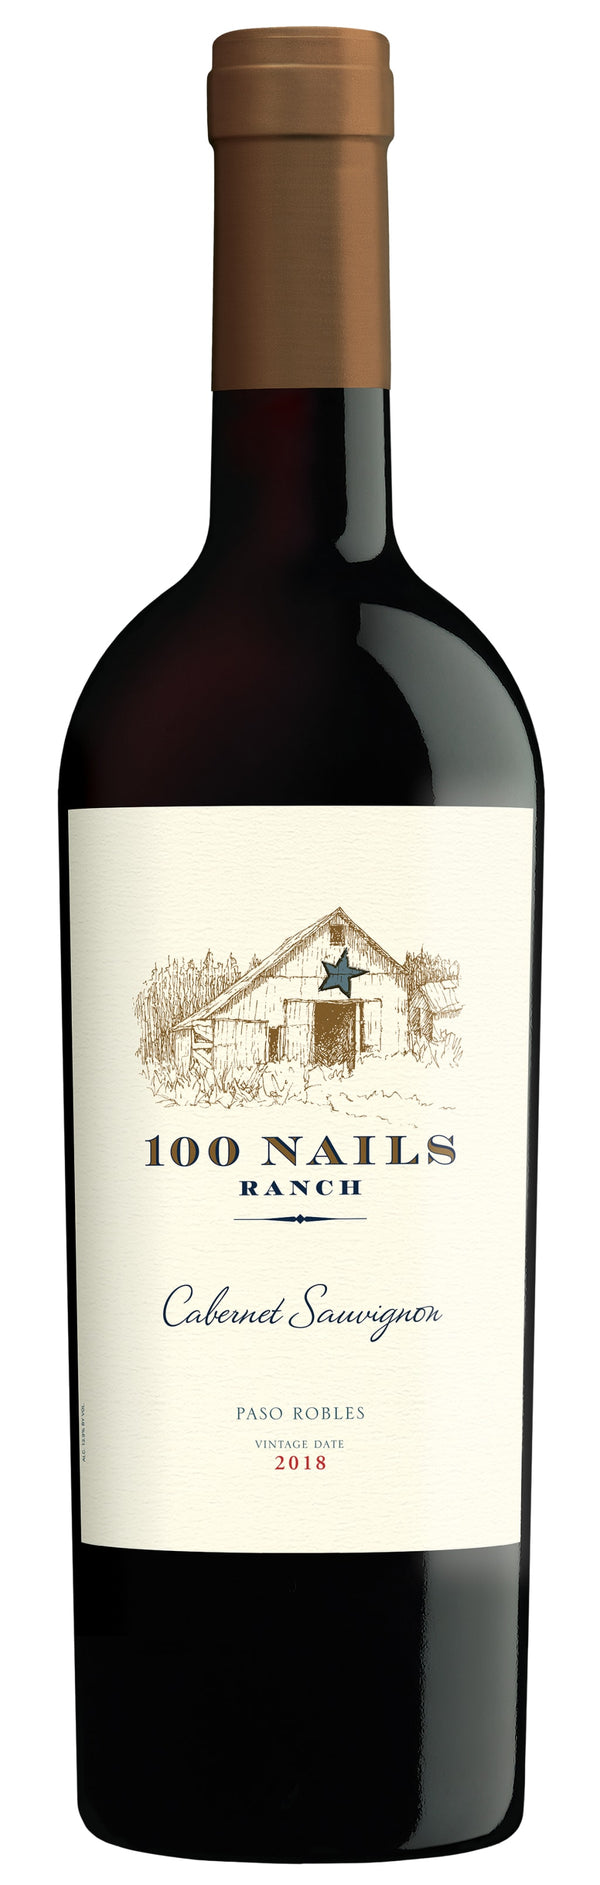 100 Nails Ranch Paso Robles Cabernet Sauvignon